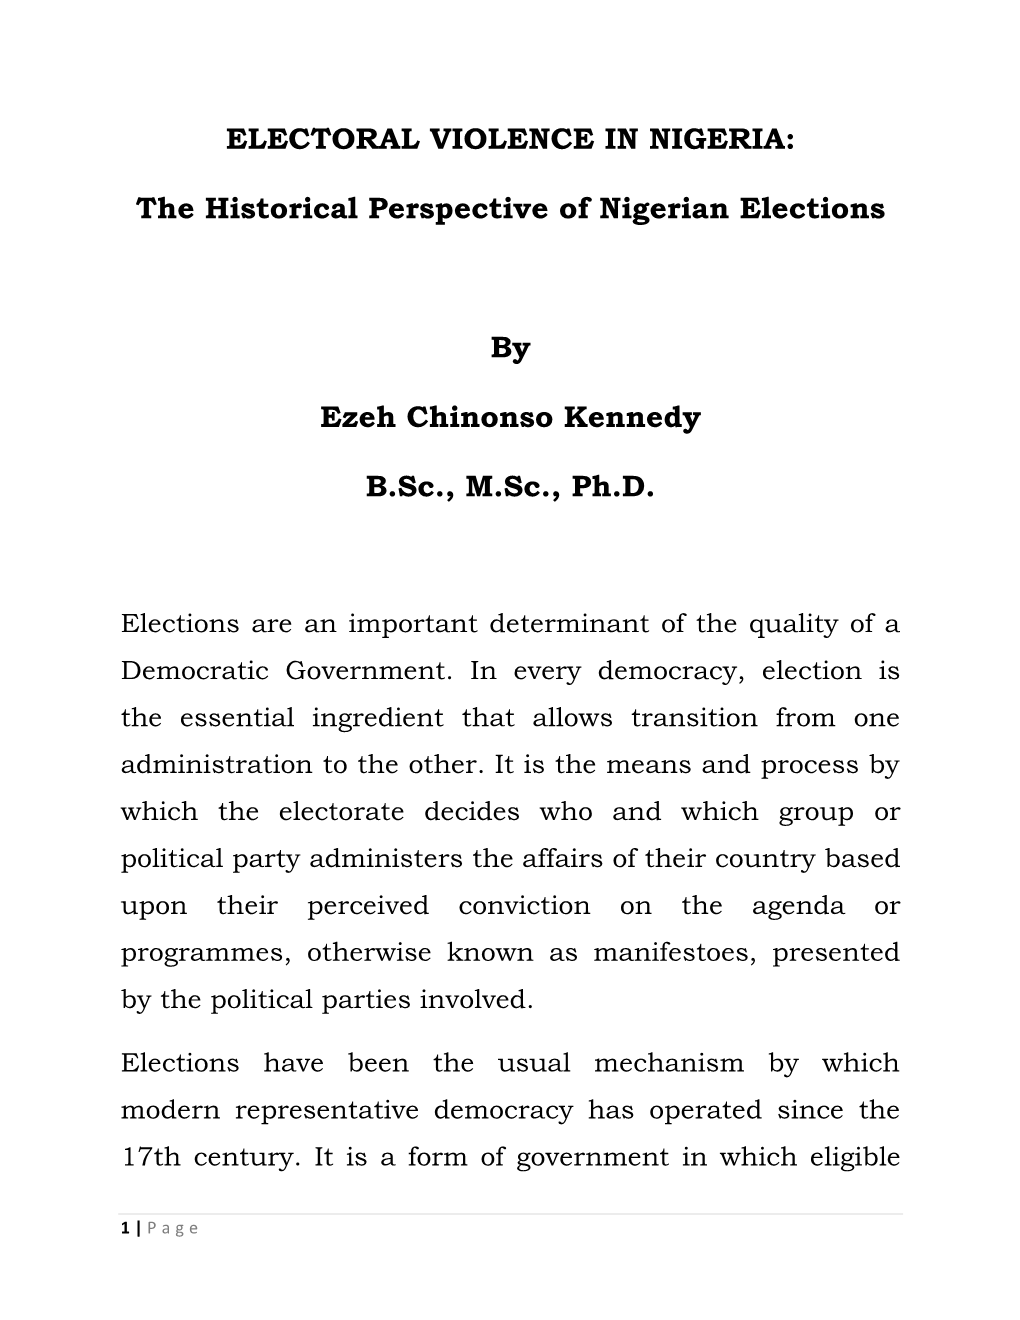 Electoral Violence in Nigeria